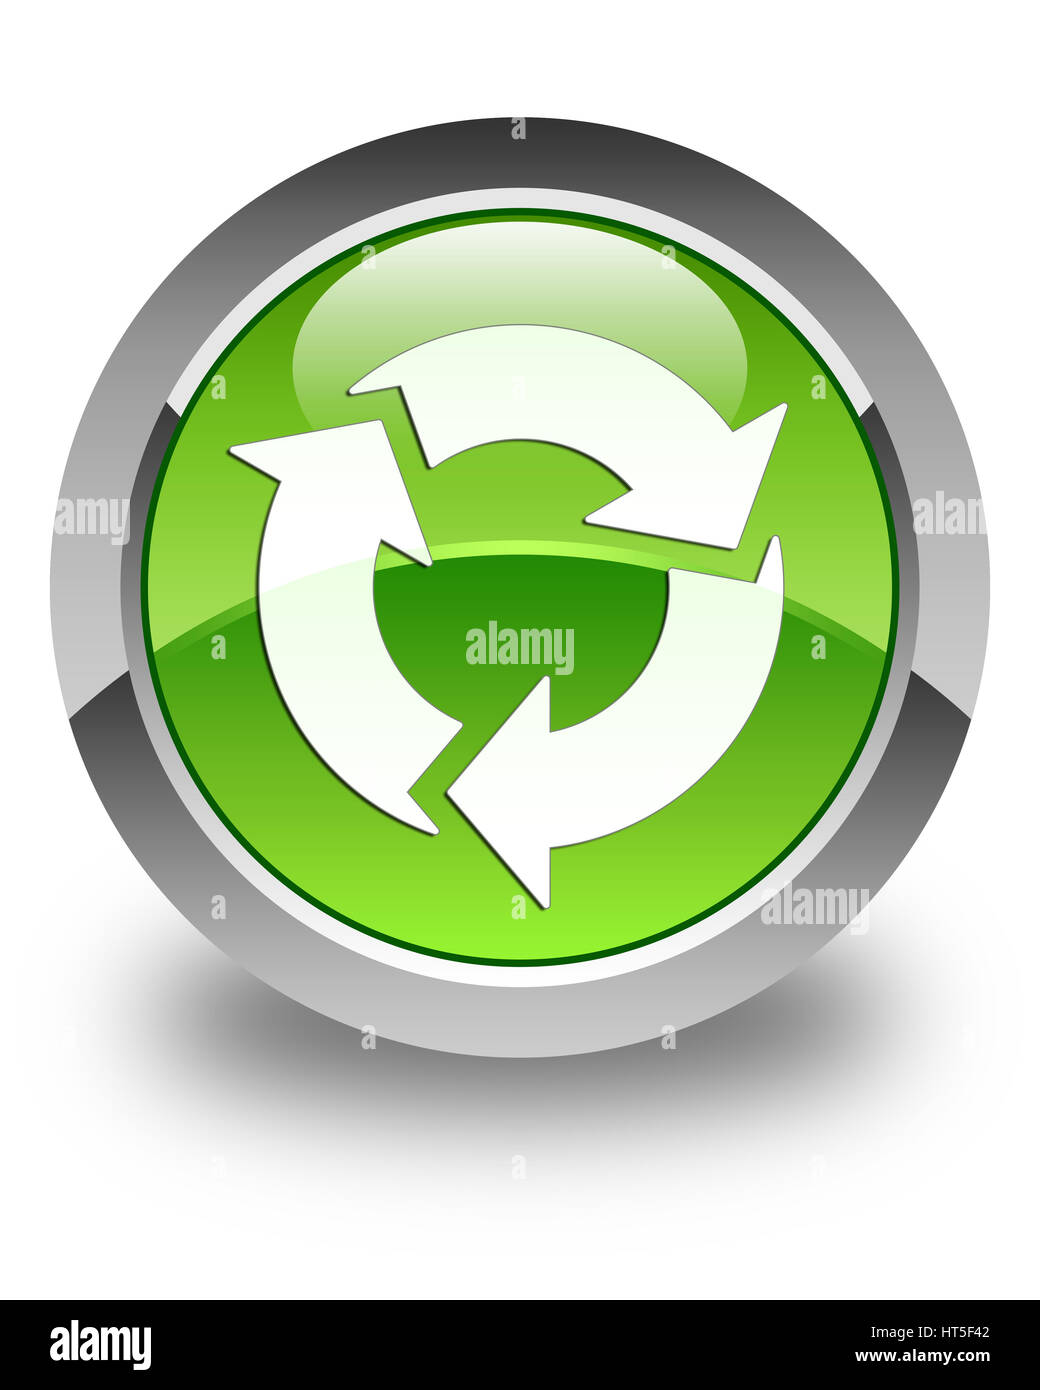 Aktualisieren Sie Symbol isoliert auf abstrakte Darstellung glänzend grünen runden Knopf Stockfoto